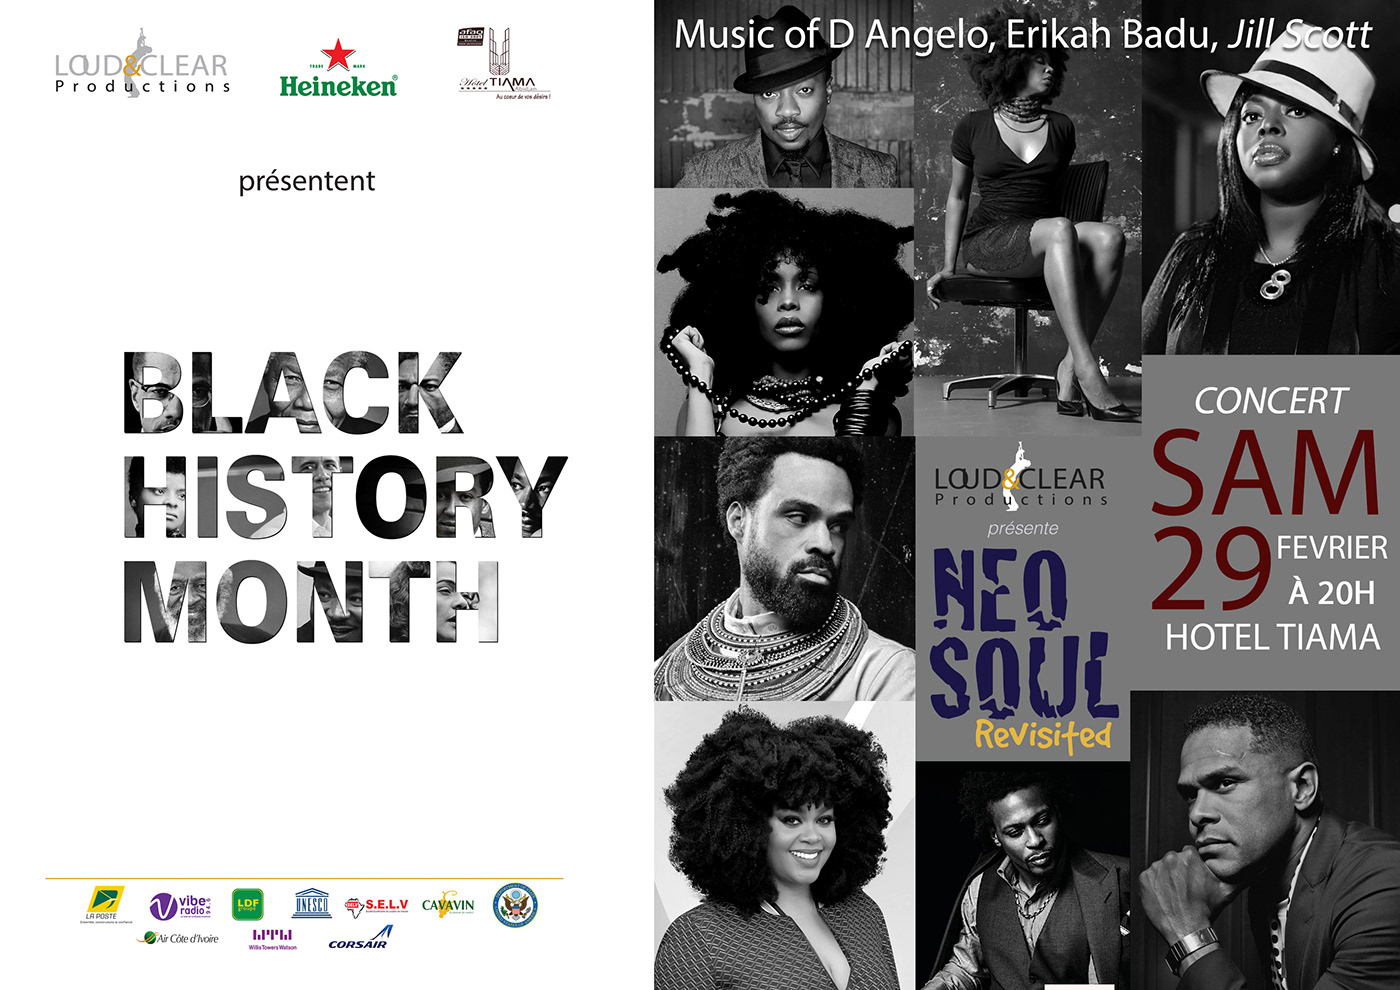 black history month communication culture evenement music Musique